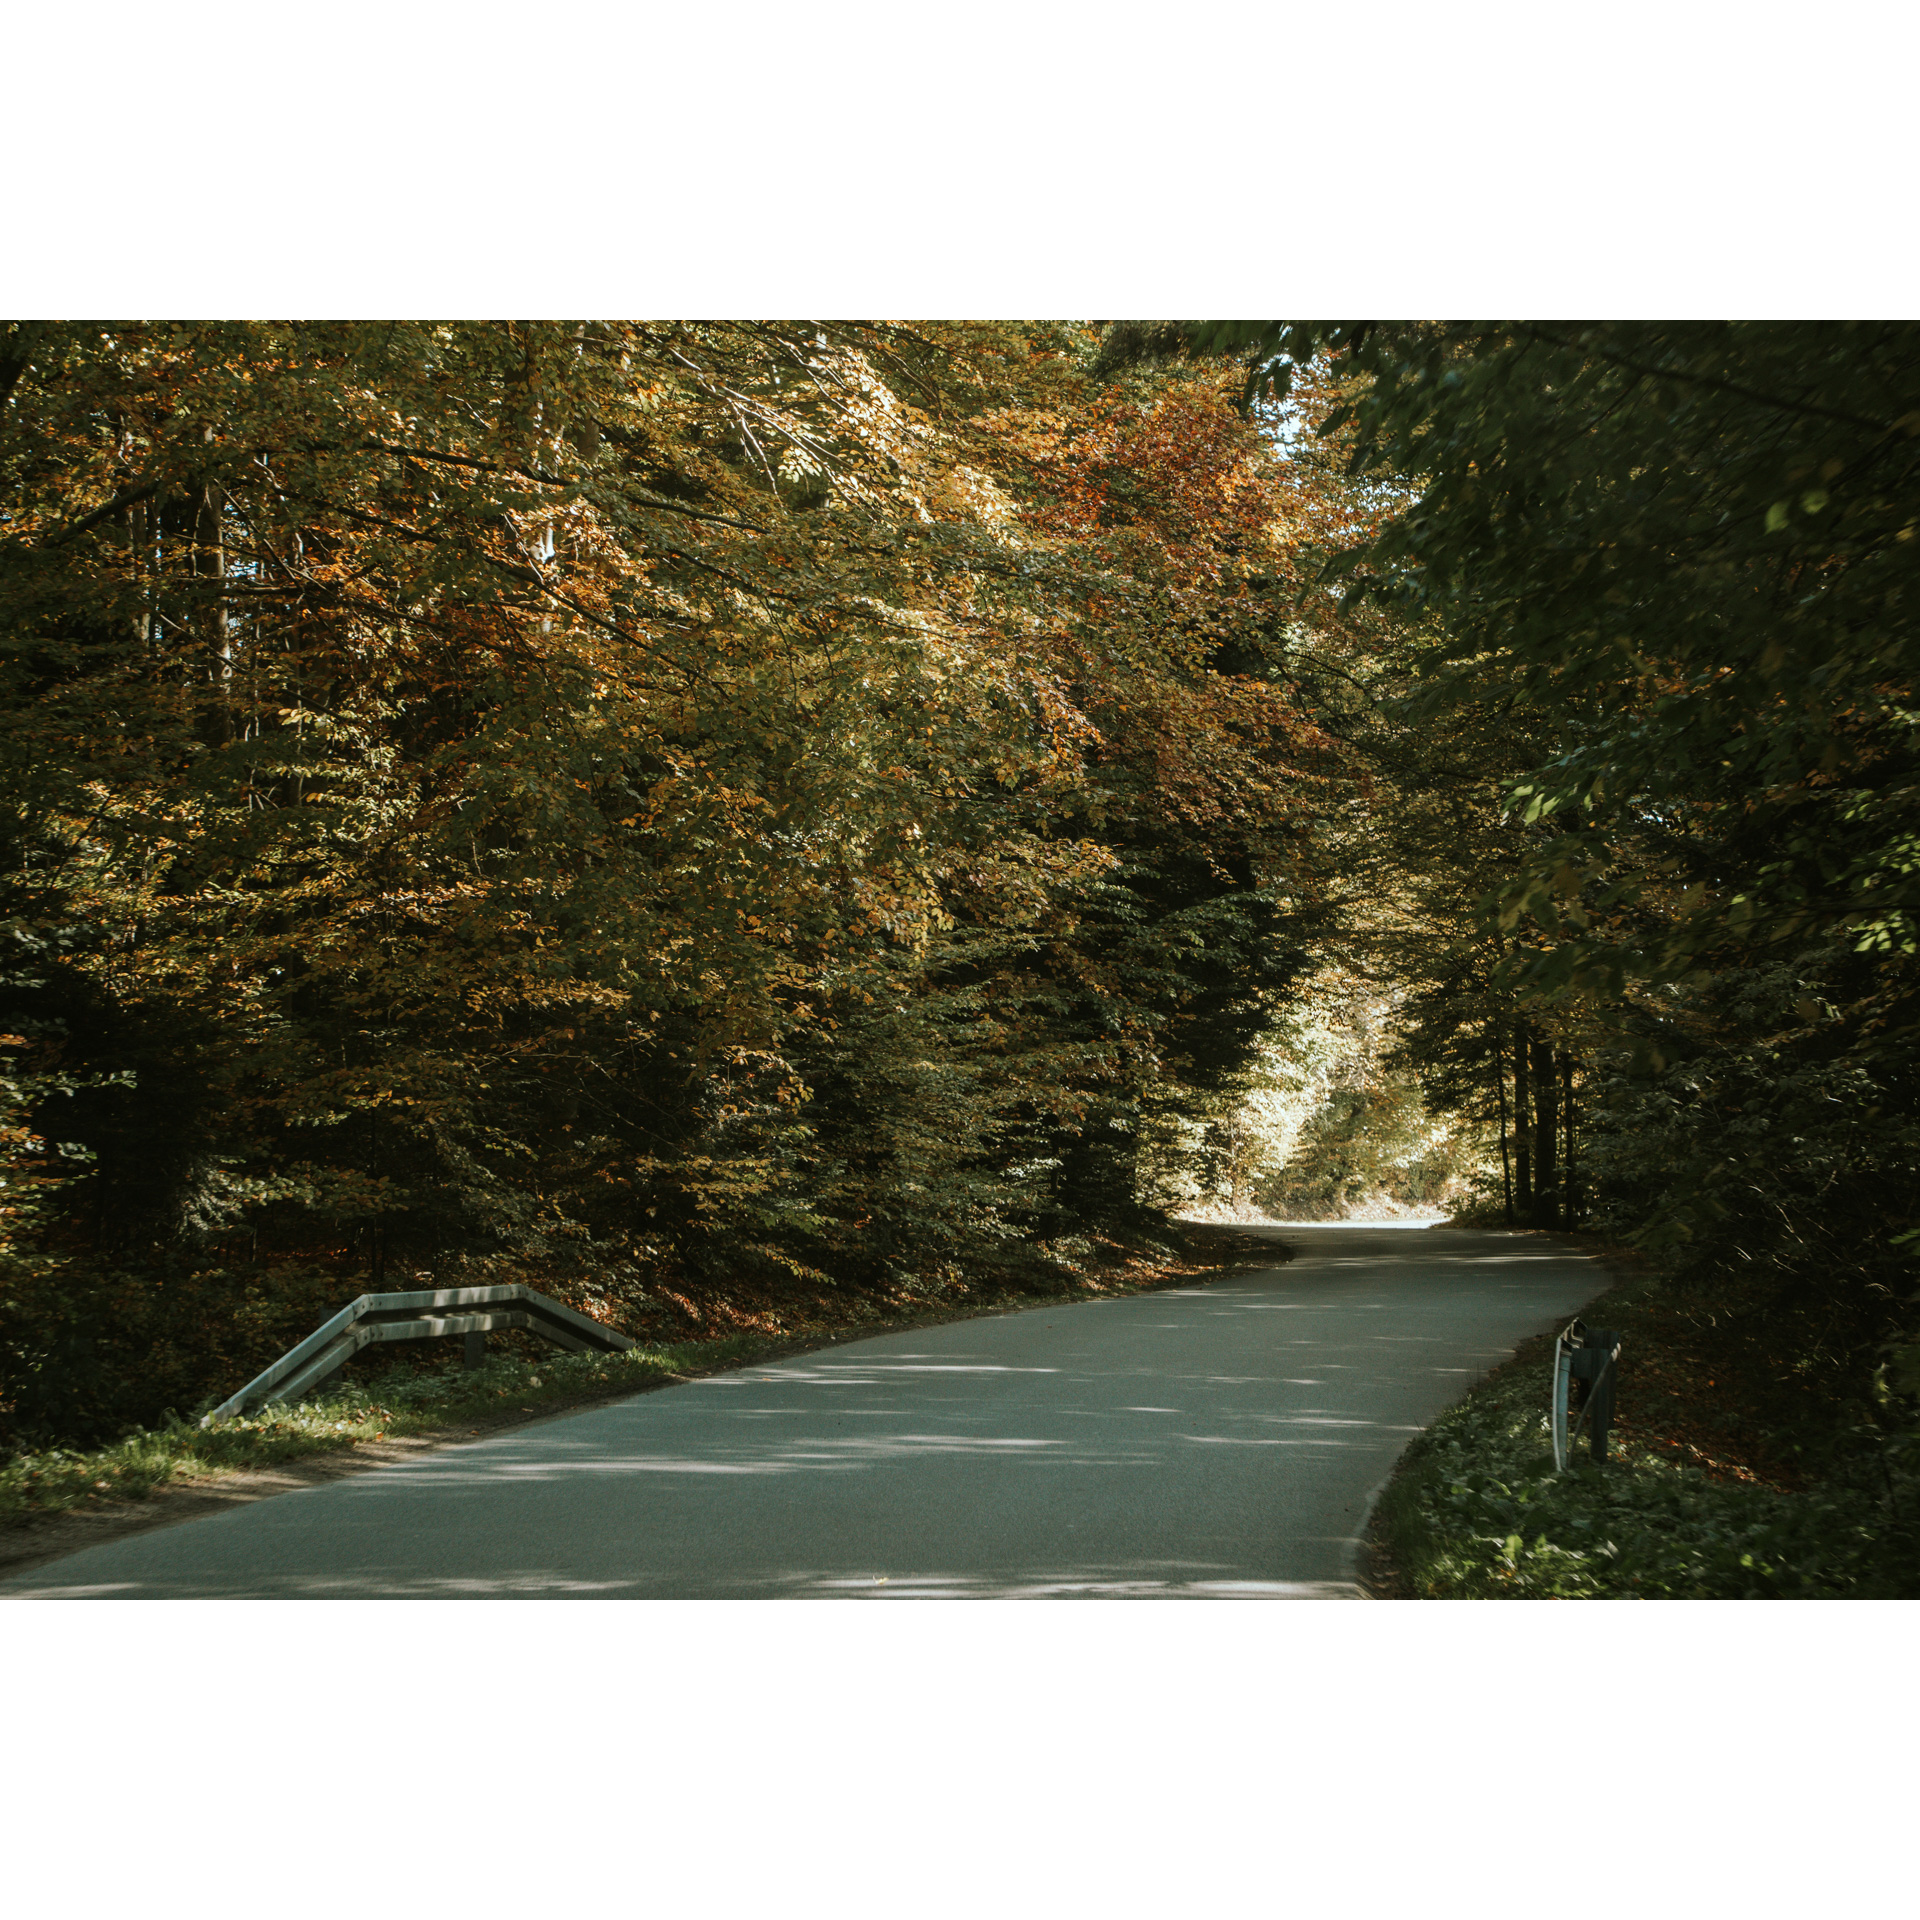 Droga asfaltowa prowadząca przez gęsty las z zielono-żółtymi liśćmi na drzewach